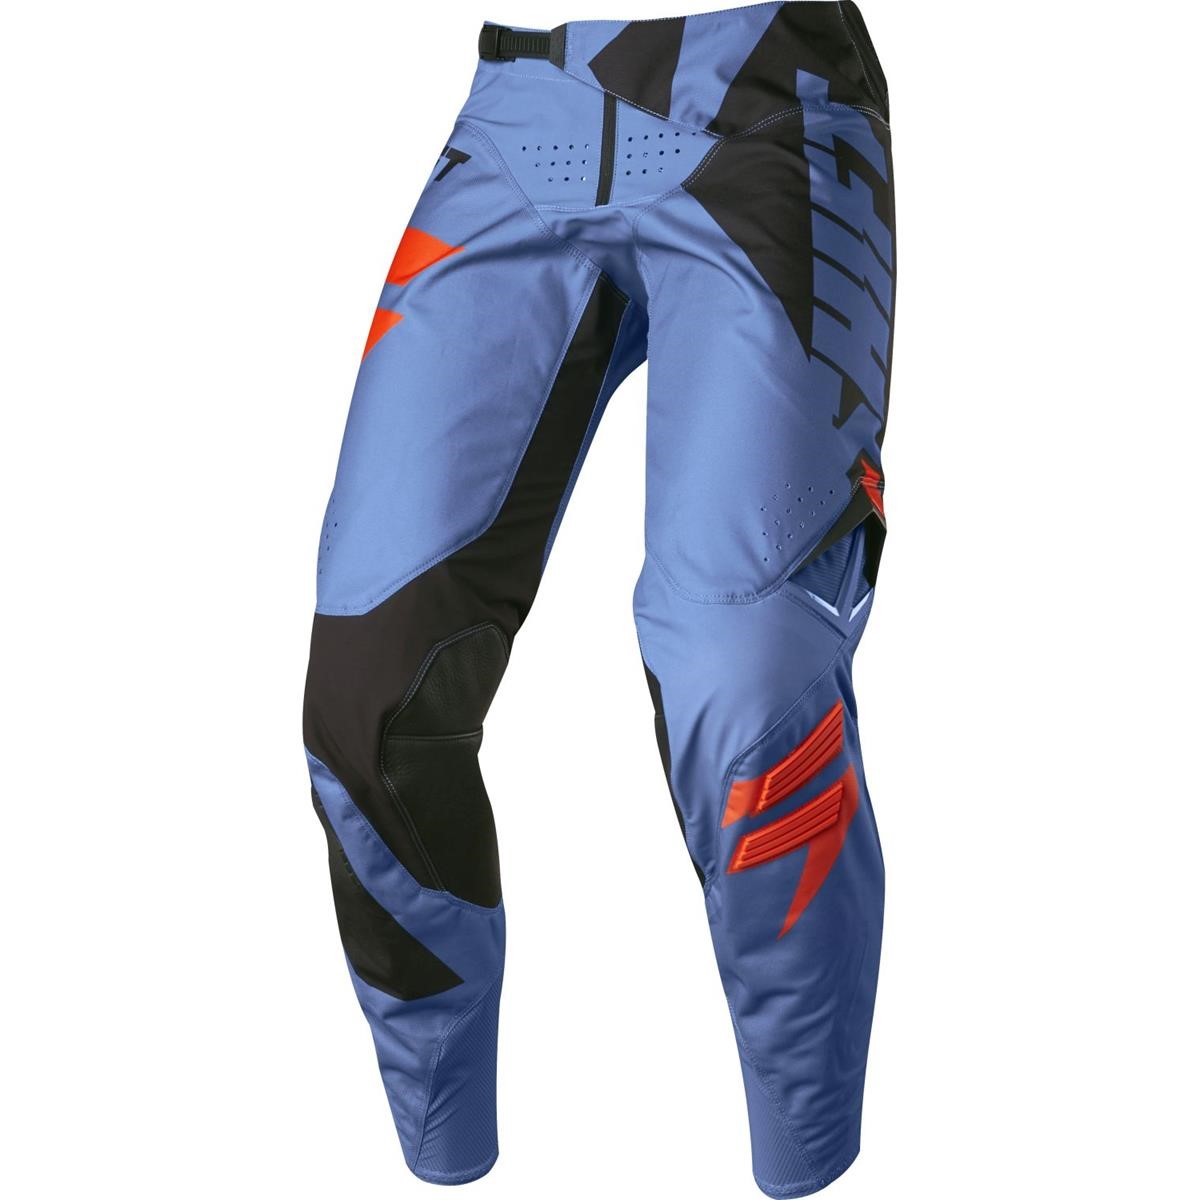 Shift Pantalon MX 3lack Blue - Mainline